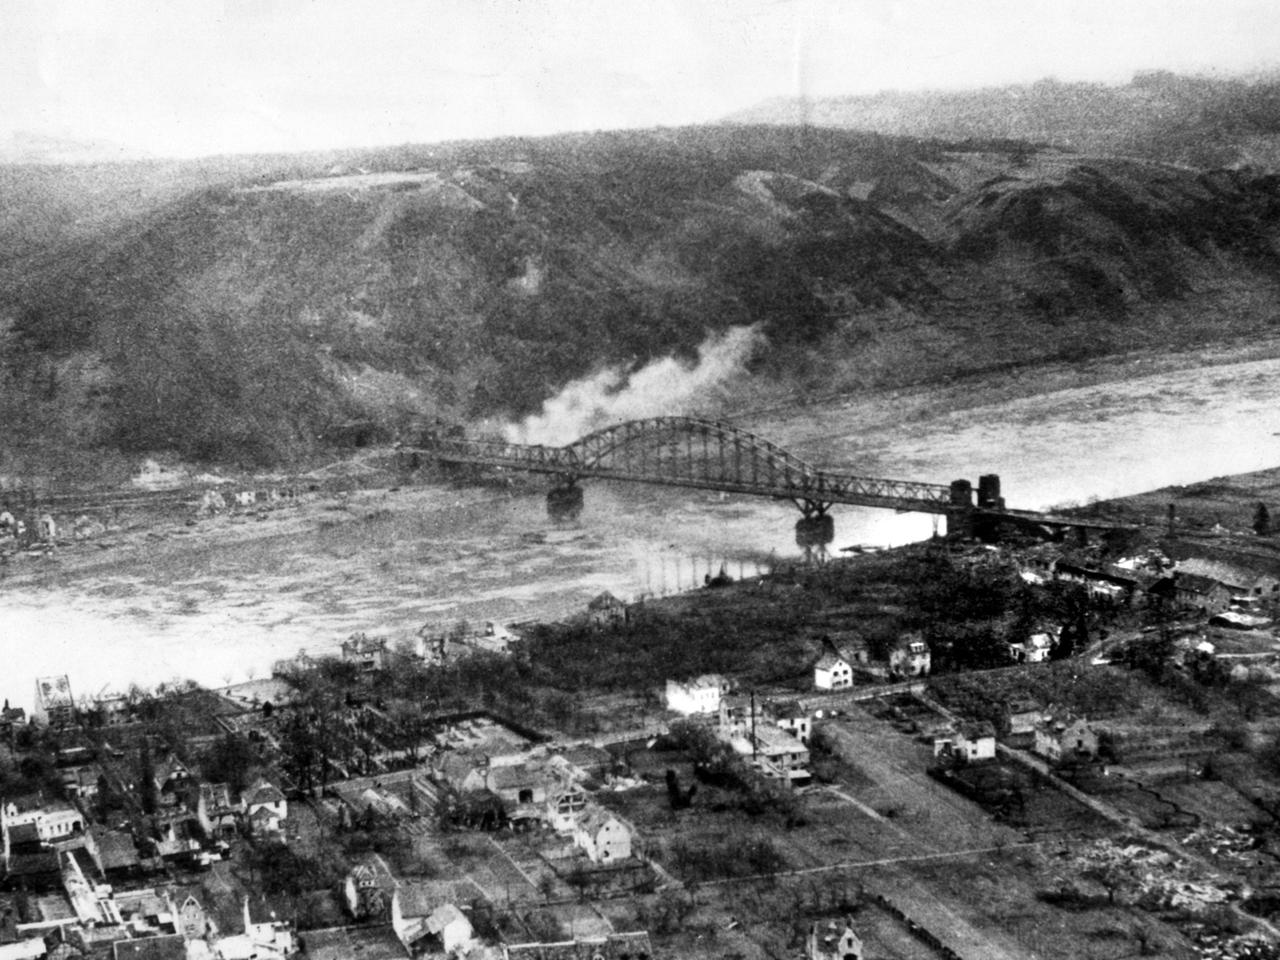 Schwarz-weiß-Foto von der Brücke in Remagen, aufgenommen im März 1945.